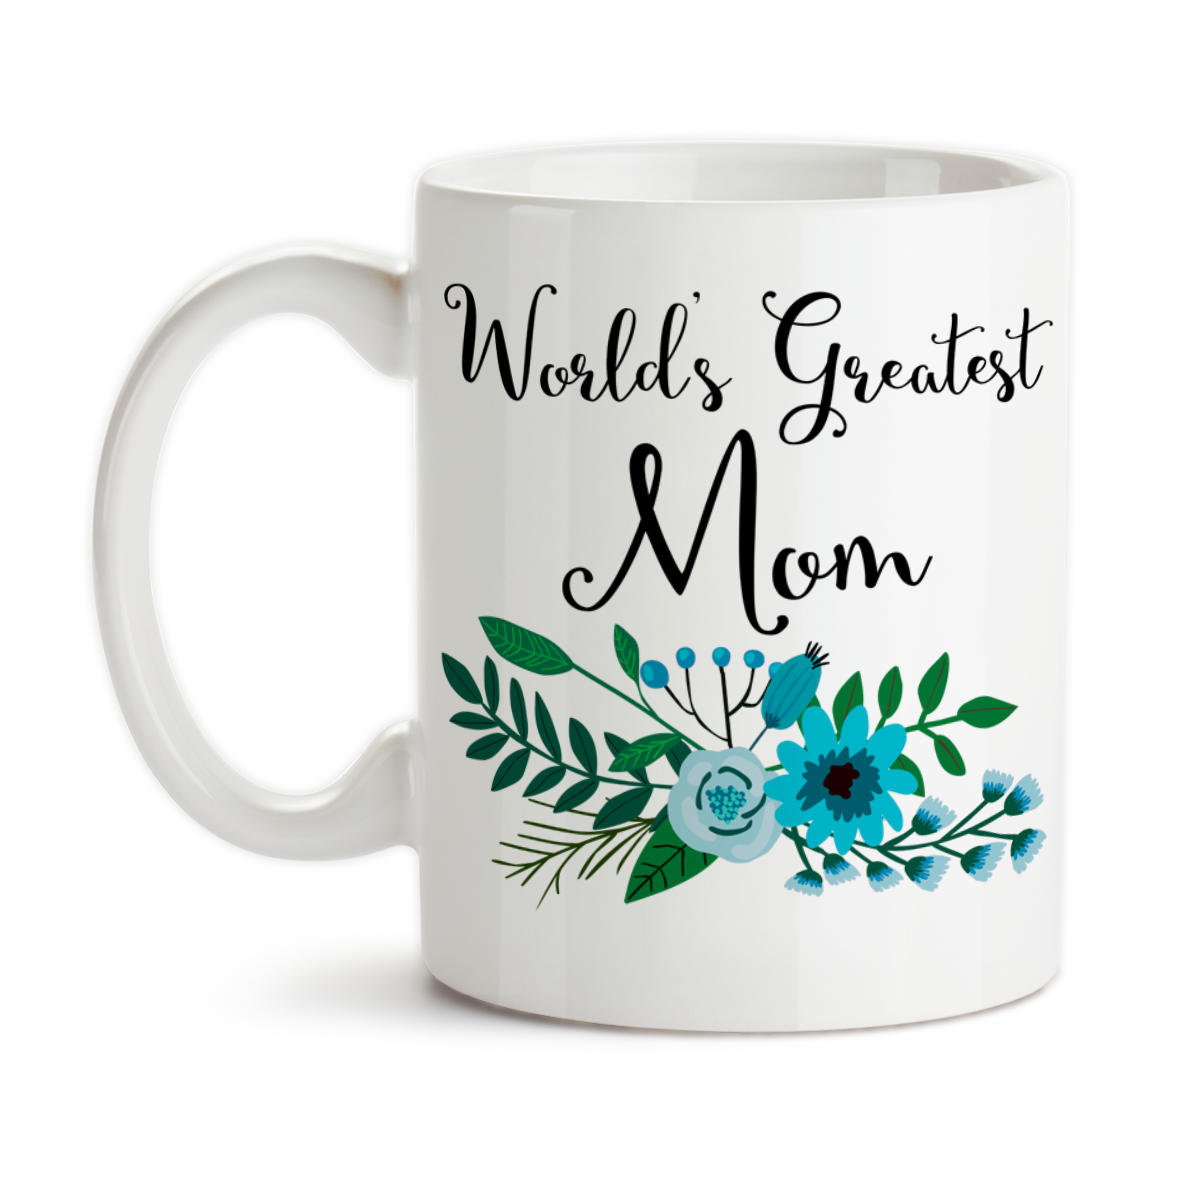 World's Greatest Mom Mug